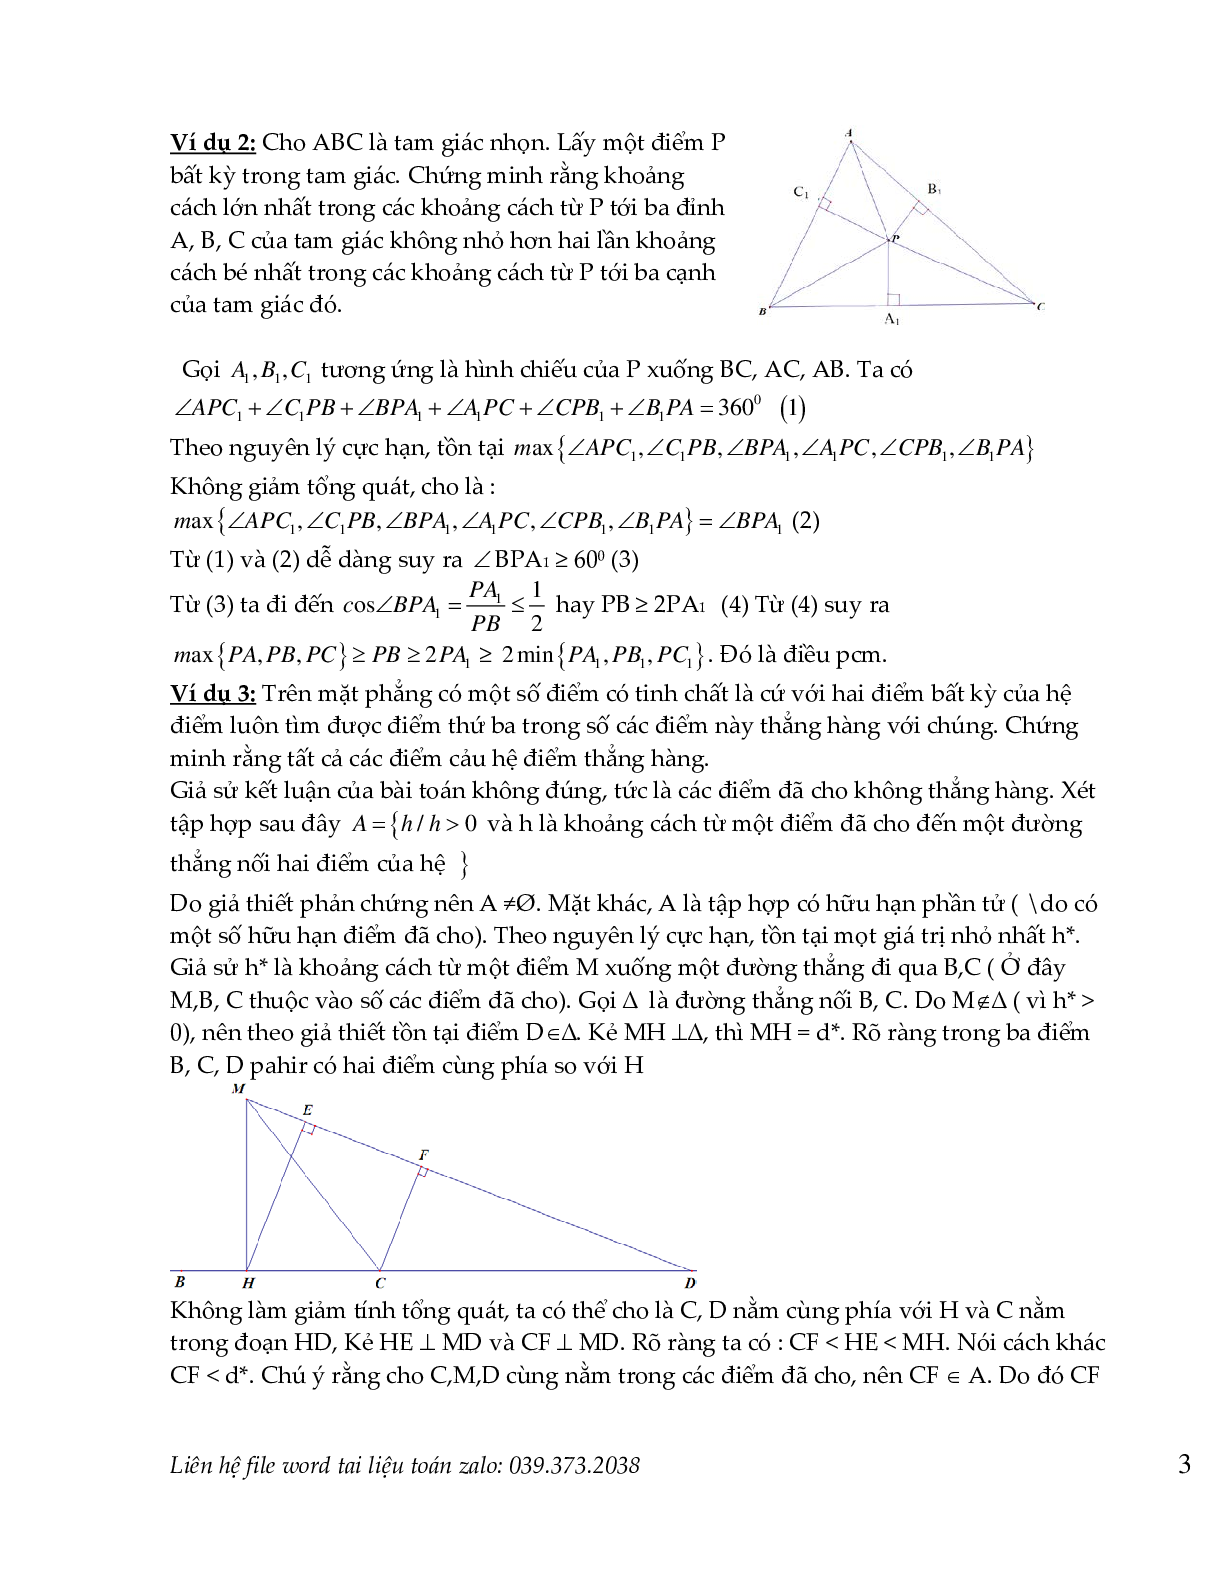 Nguyên lý dirichlet  và nguyên lý cực hạn trong toán tổ hợp (trang 2)